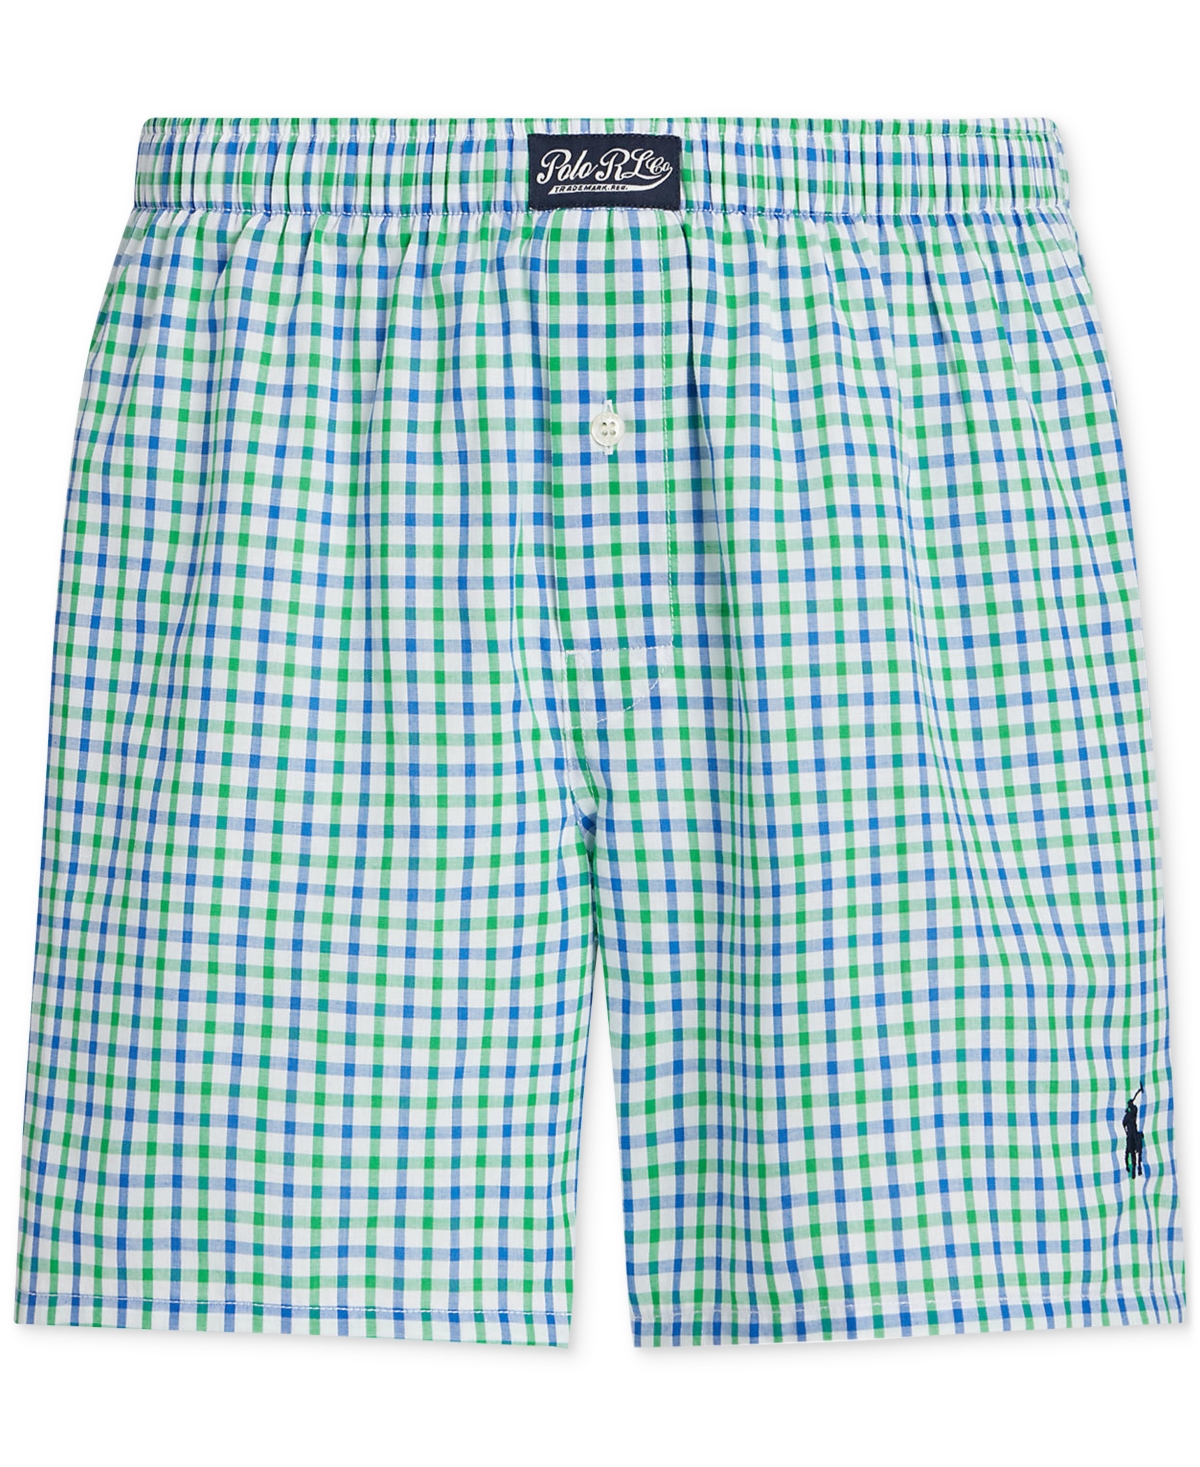 Shop Polo Ralph Lauren Men's Woven Cotton Boxer Shorts In Springs Plaid Curise Navy Pp